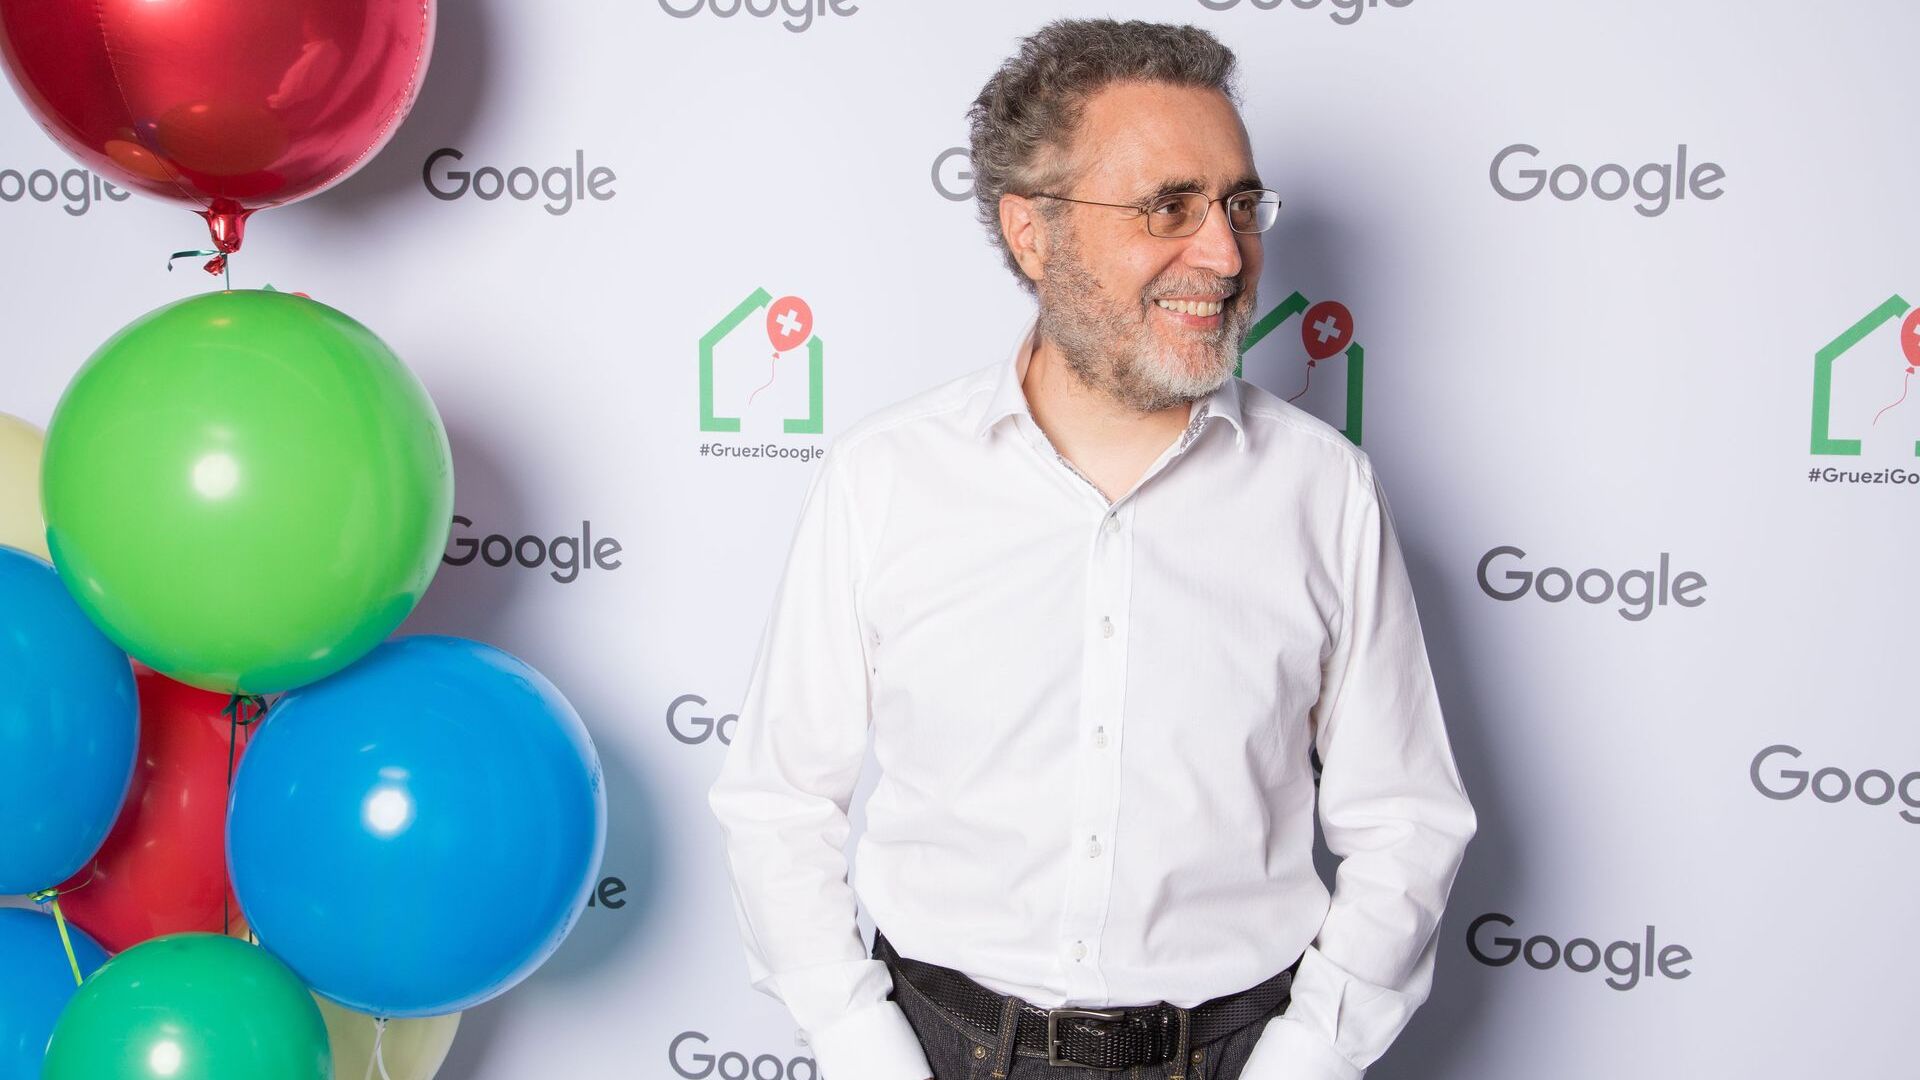 Urs Hölzle, starszy wiceprezes ds. infrastruktury technicznej, wziął udział w oficjalnej inauguracji nowego kampusu Europaallee Google w Zurychu 27 czerwca 2022 r.